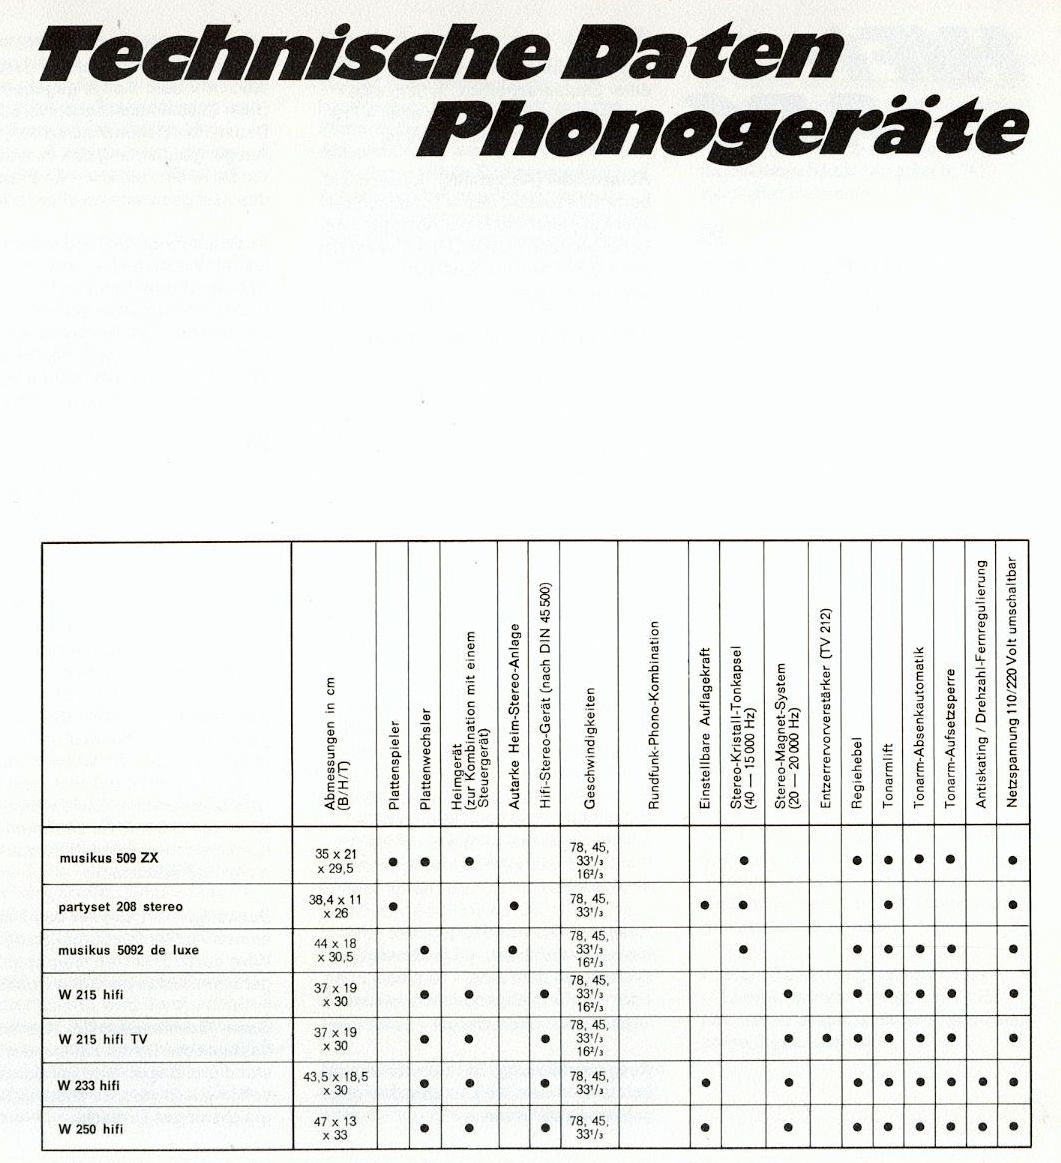 Telefunken Plattenspieler 1972-Daten.jpg